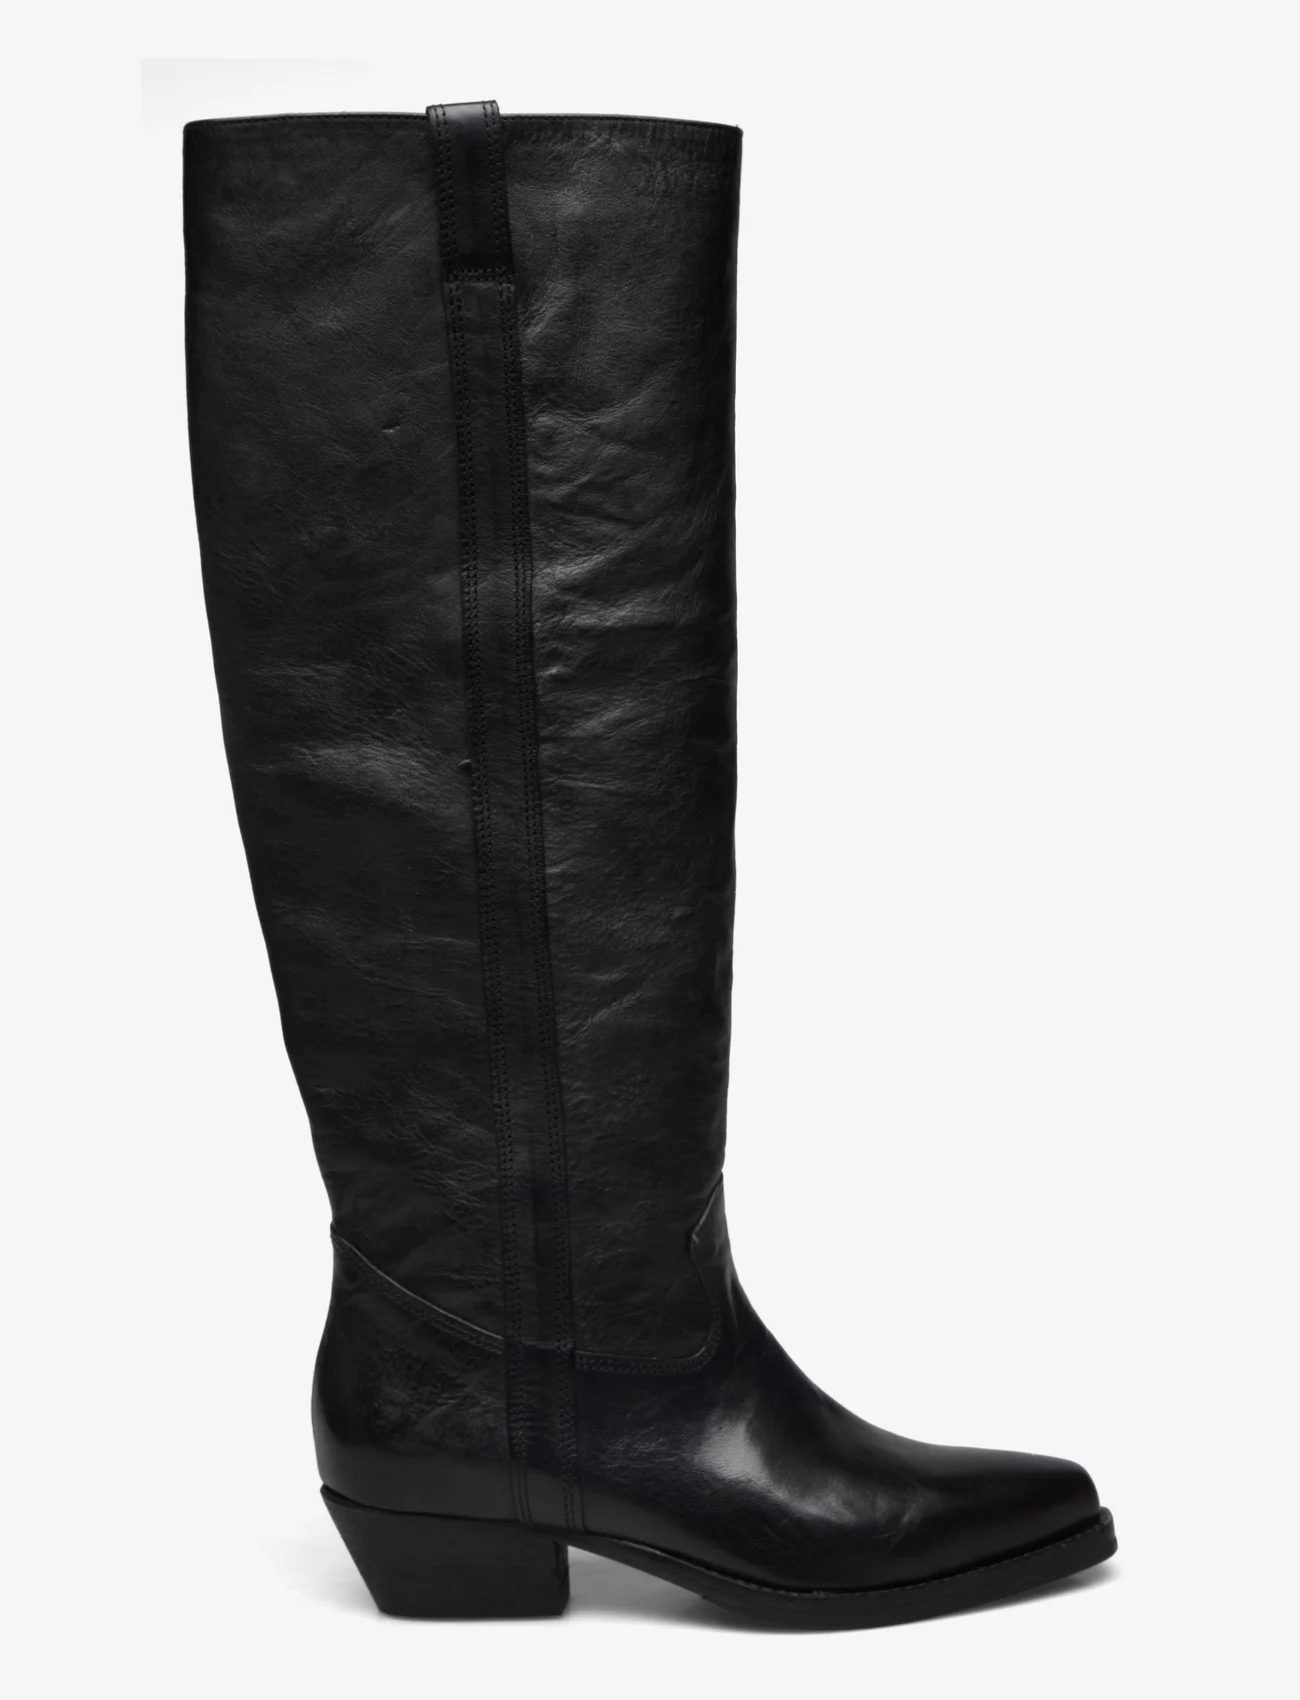 Billi Bi - Long Boots - kniehohe stiefel - black roma calf - 1